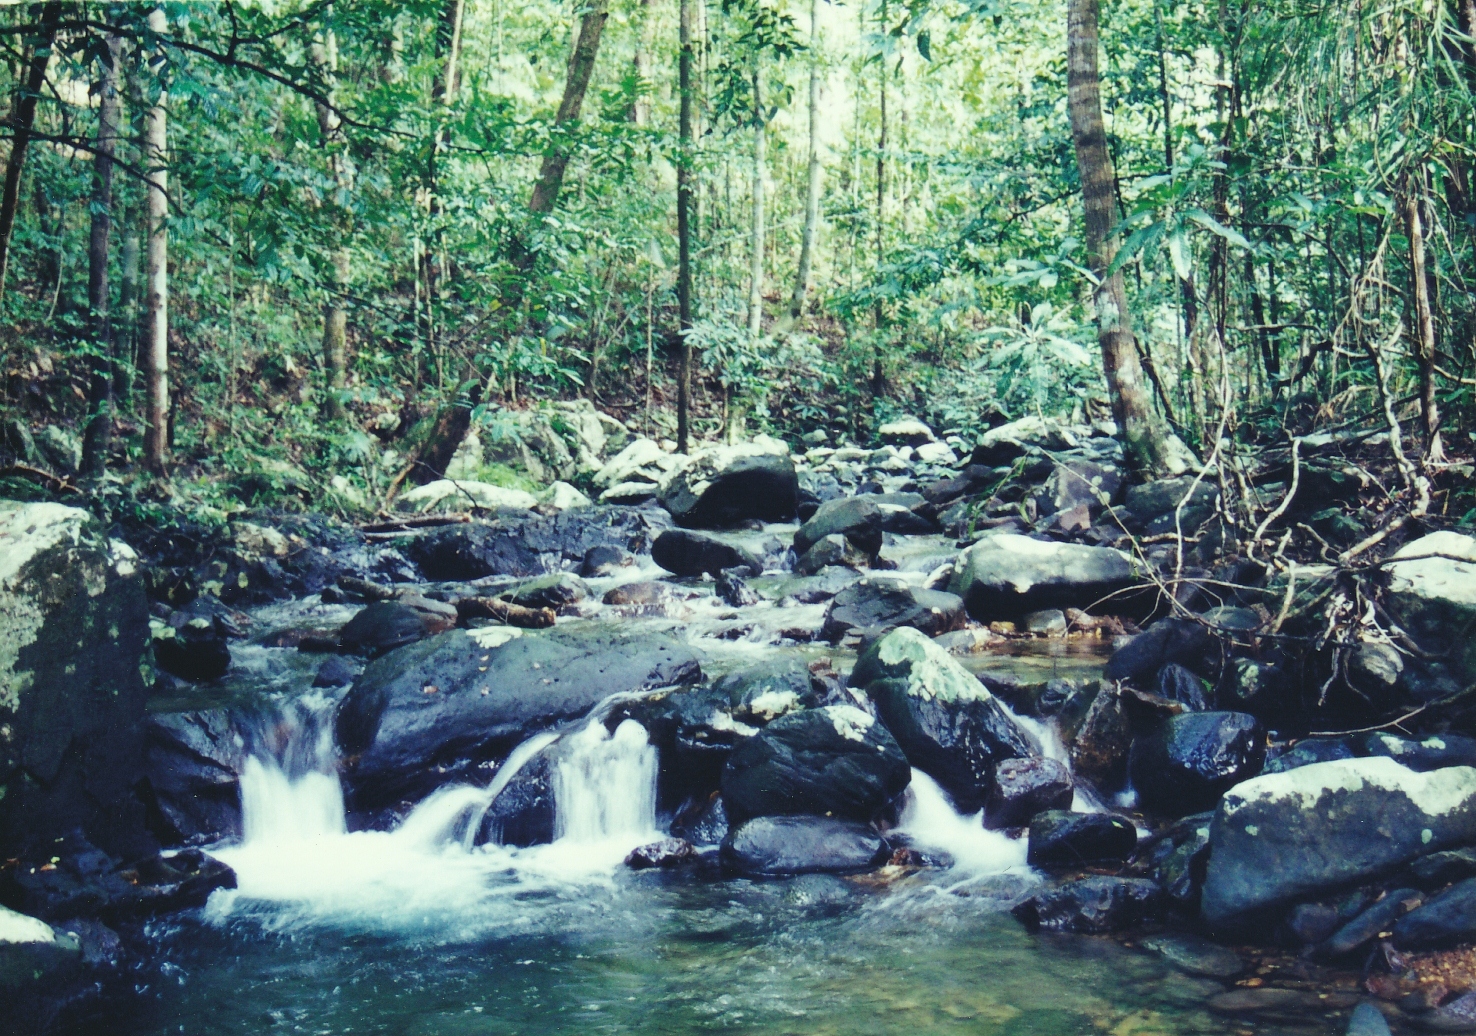 Telaga Tujuh Forest Eco-Park